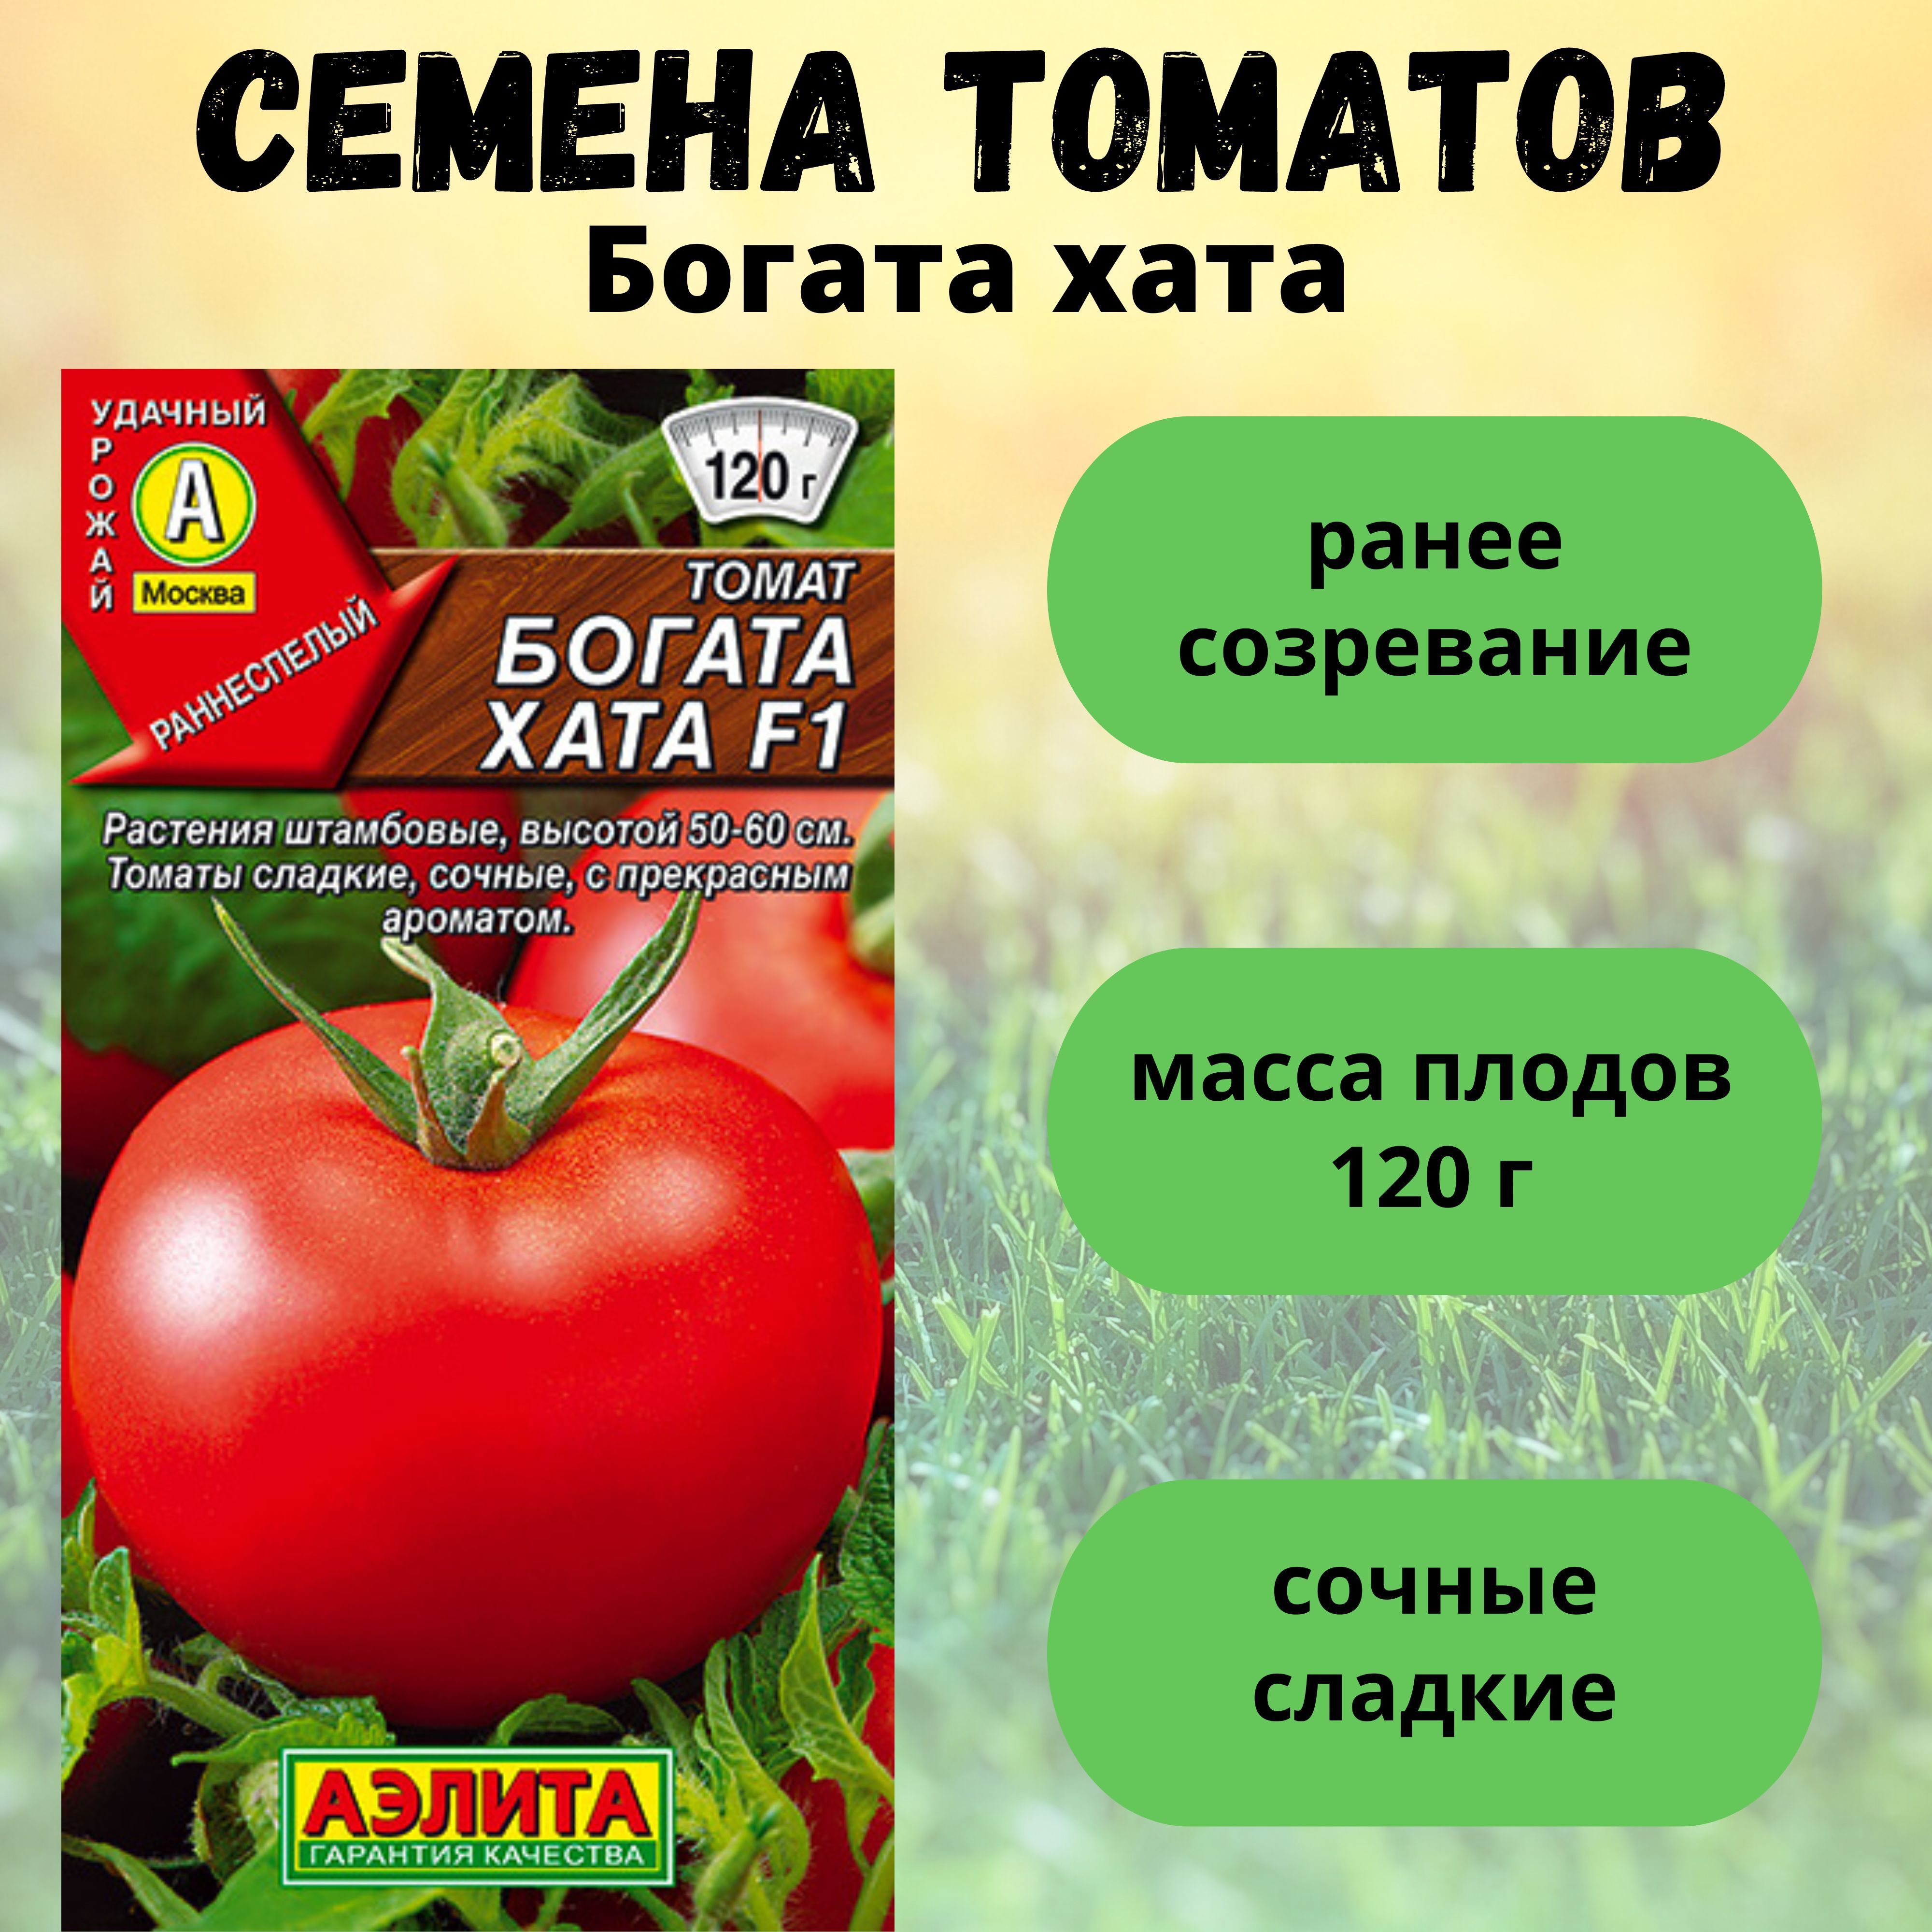 Семена томатов богата хата. Томат хата f1